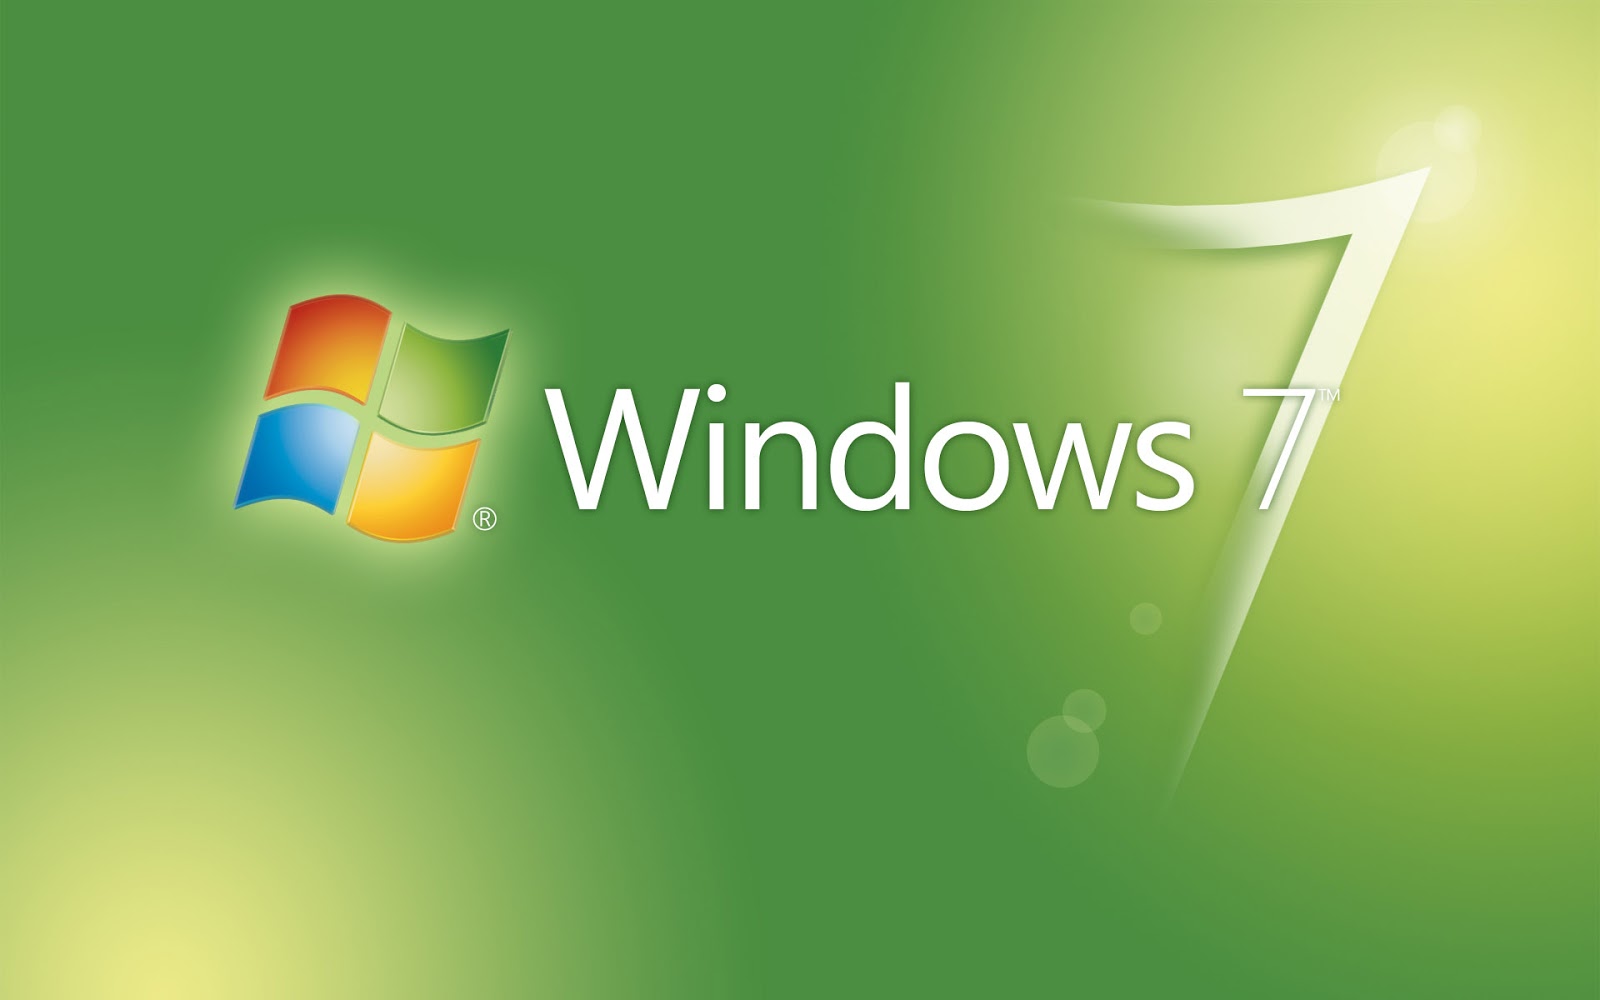 vijay hd wallpaper für windows 7,grün,betriebssystem,text,schriftart,grafikdesign